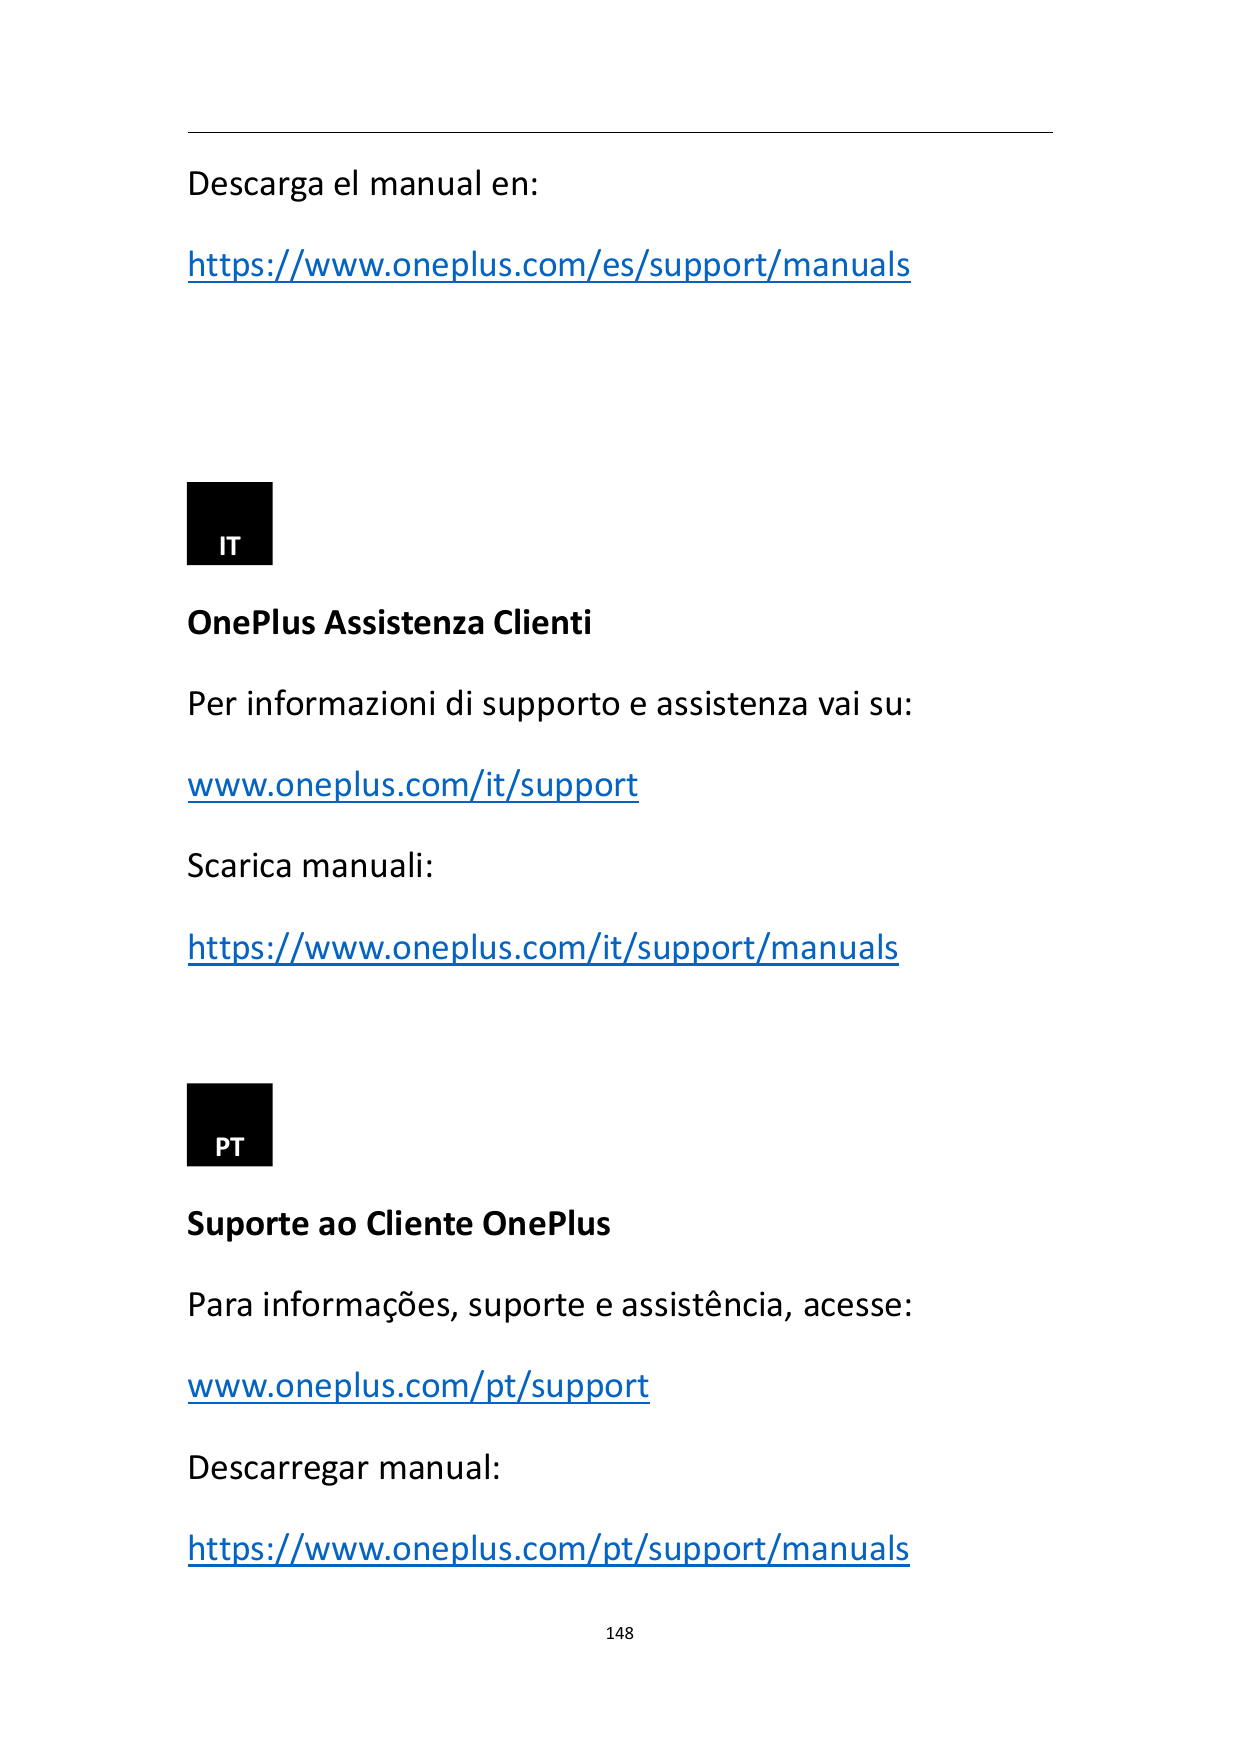 Descarga el manual en:https://www.oneplus.com/es/support/manualsITOnePlus Assistenza ClientiPer informazioni di supporto e assis